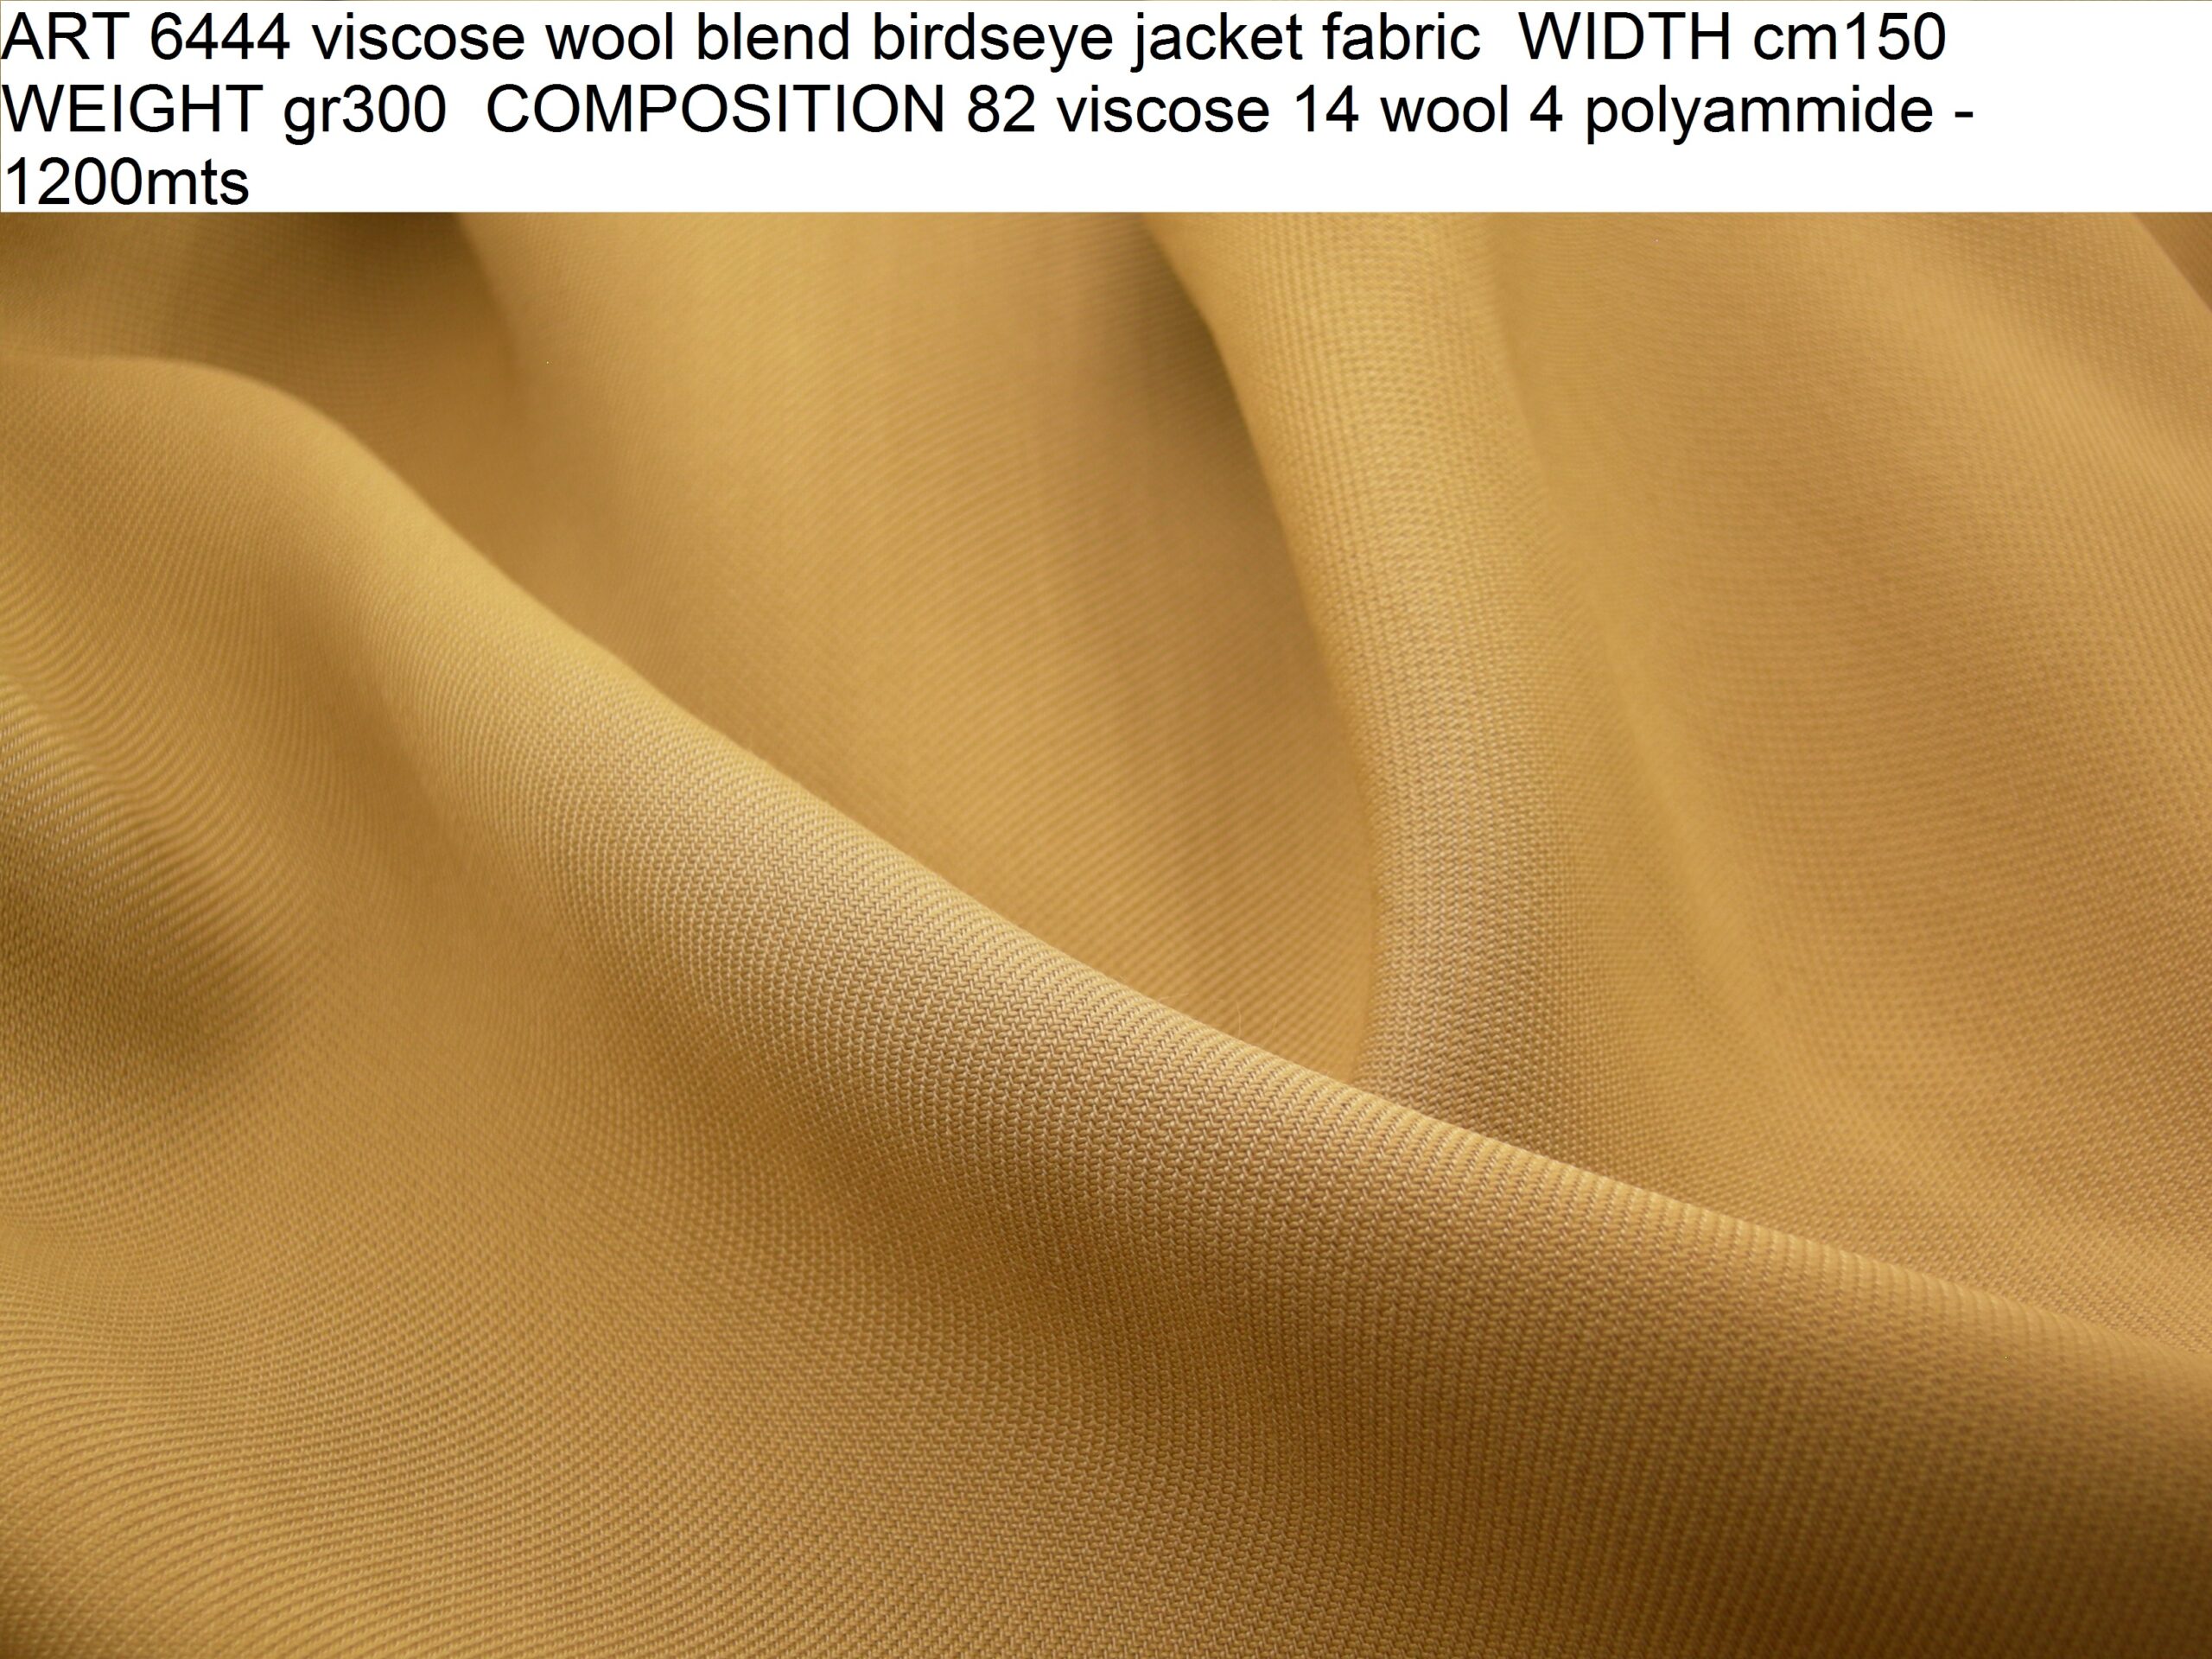 ART 6444 viscose wool blend birdseye jacket fabric WIDTH cm150 WEIGHT gr300 COMPOSITION 82 viscose 14 wool 4 polyammide - 1200mts